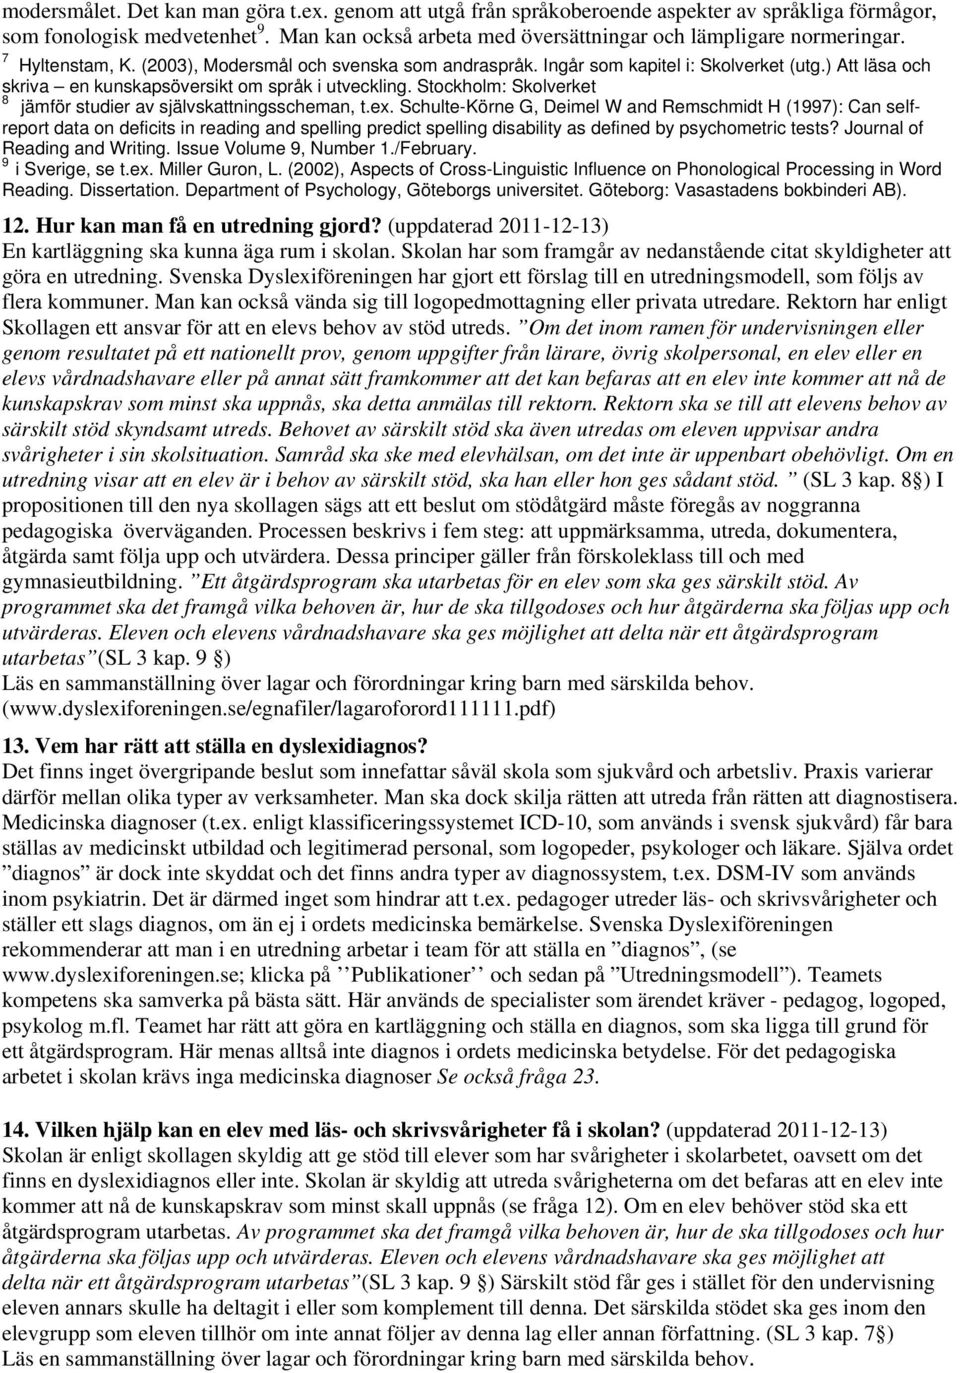 Stockholm: Skolverket 8 jämför studier av självskattningsscheman, t.ex.